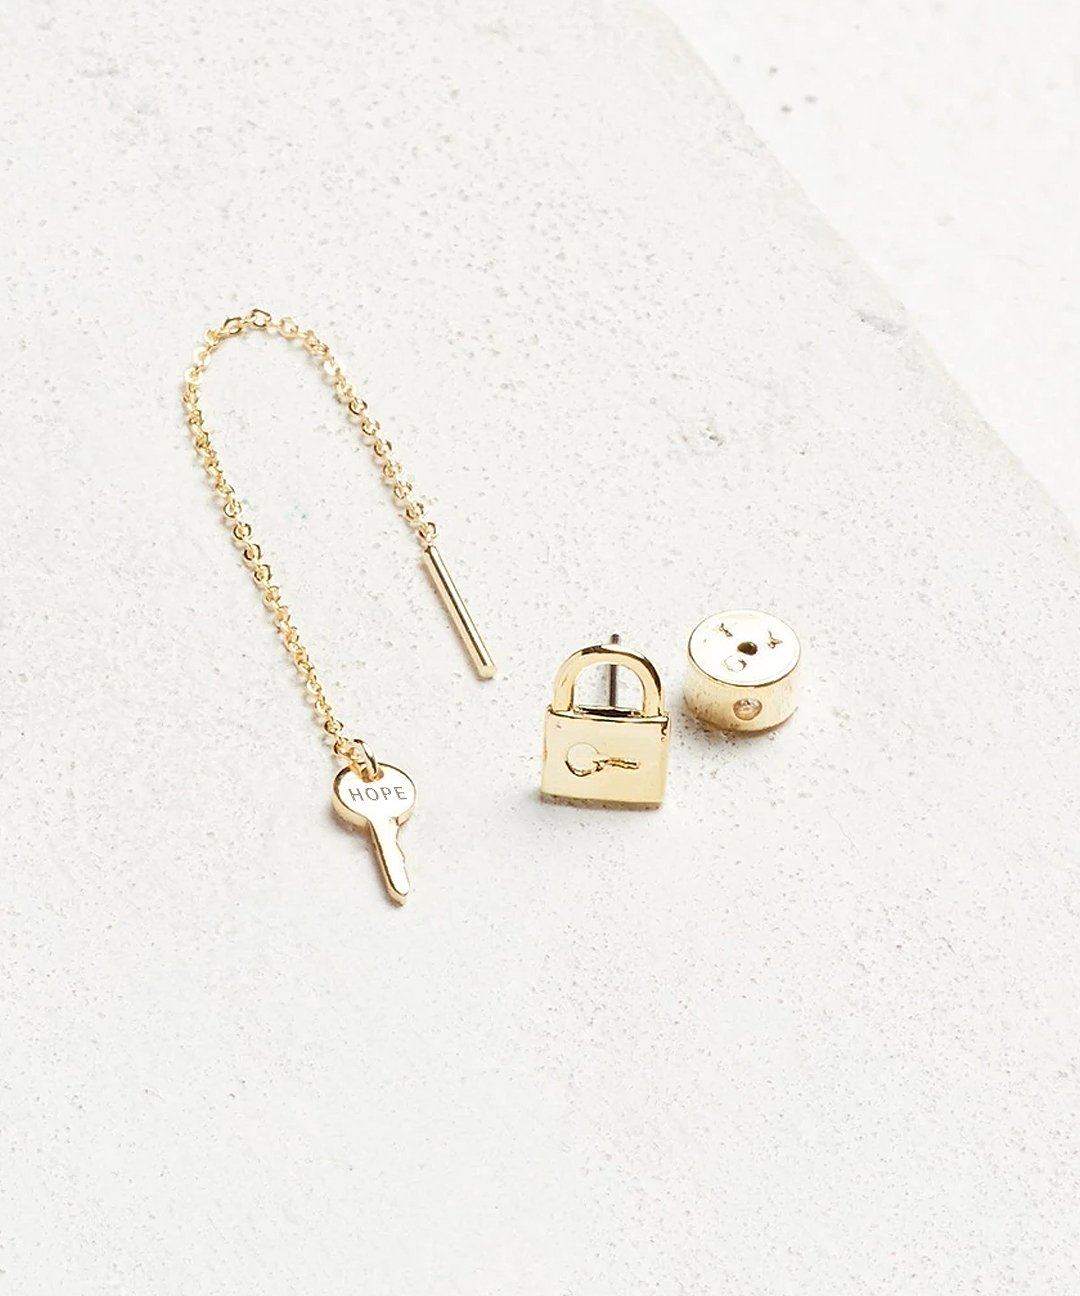 Mini Key Threader and Padlock Earring Set Earrings The Giving Keys HOPE Gold 